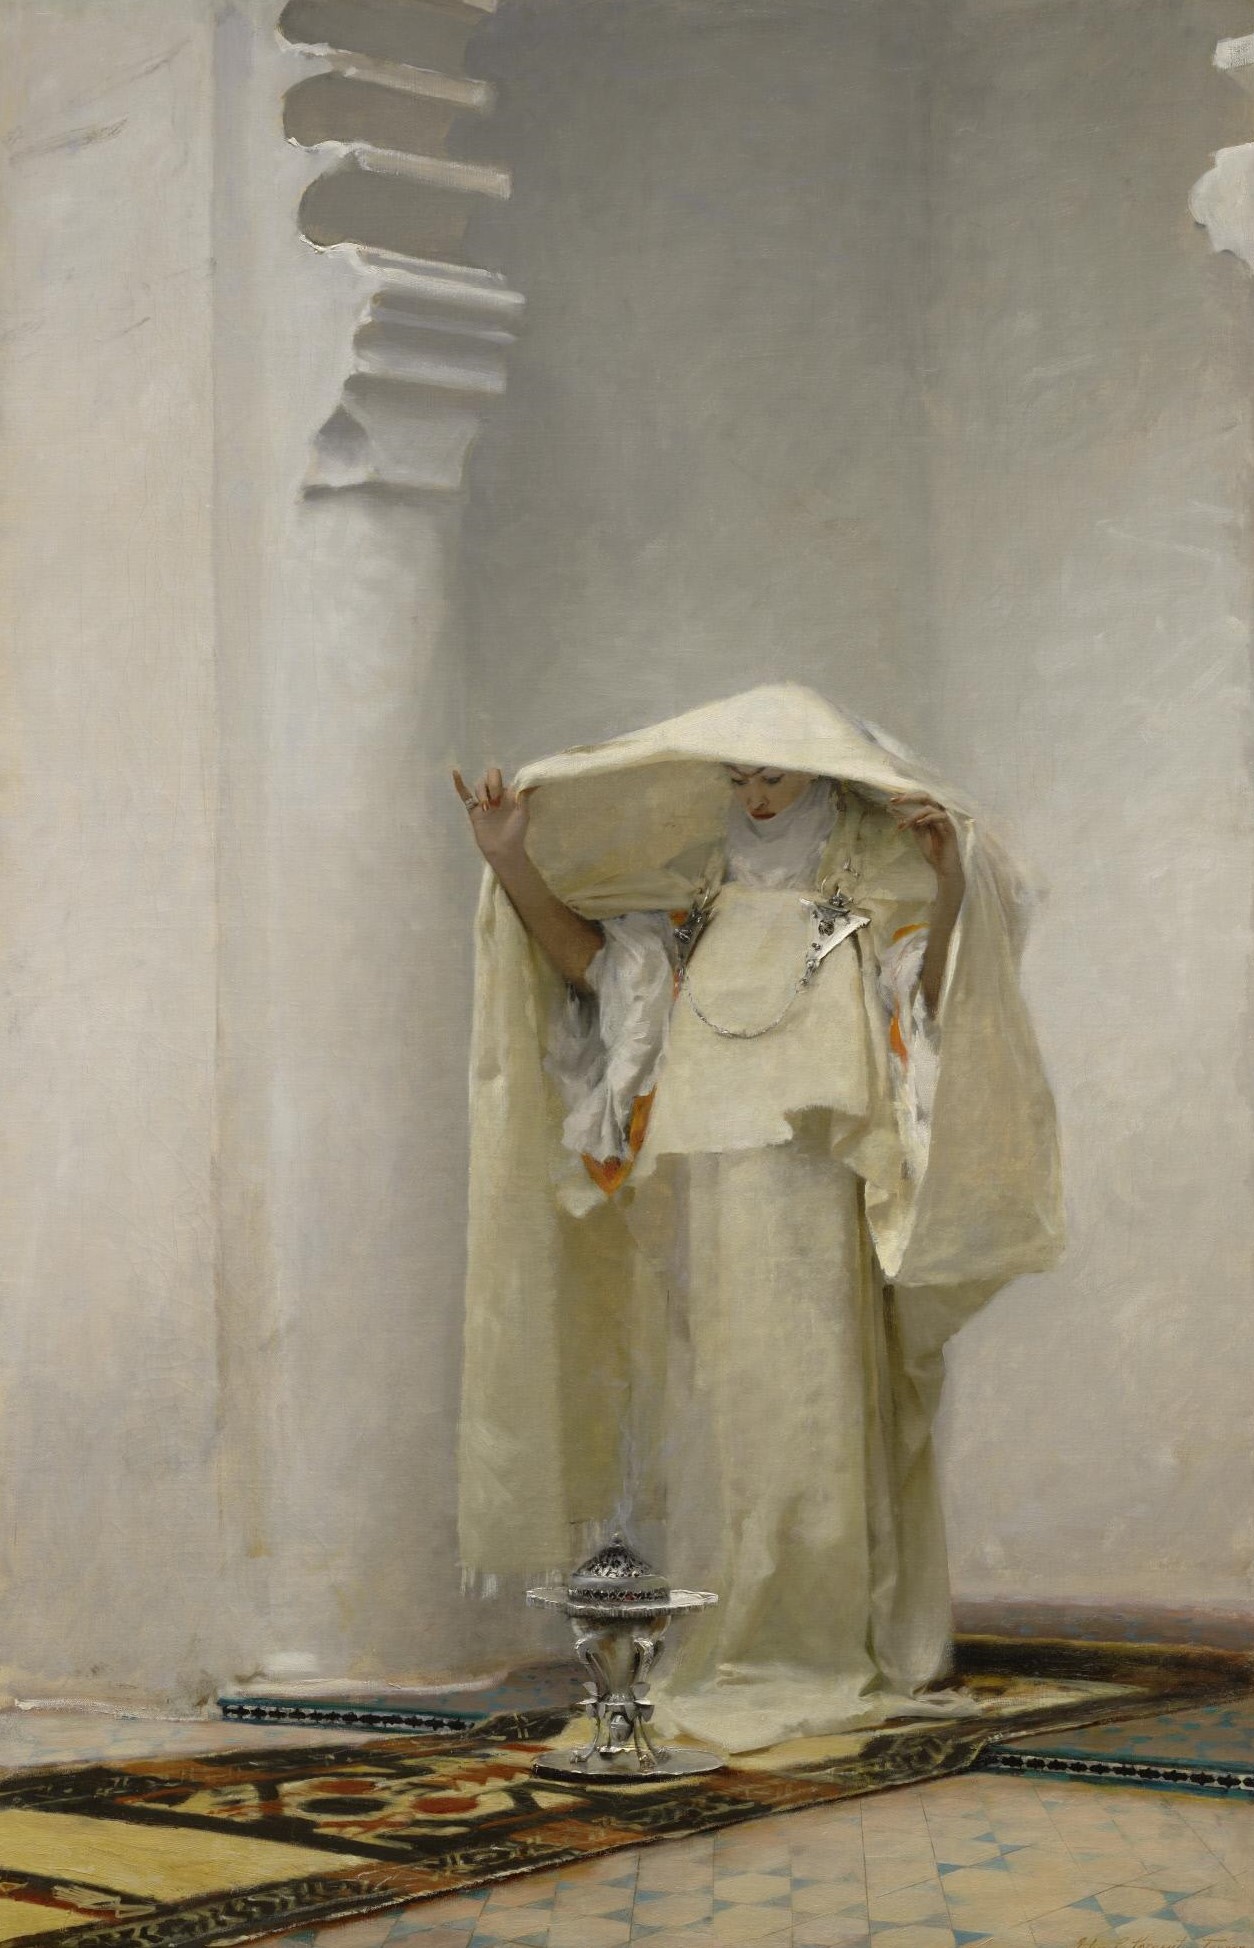 Fumée d'Ambre Gris (アムベルグリスの煙) by John Singer Sargent - 1880年 - 139.1 x 90.6 cm 